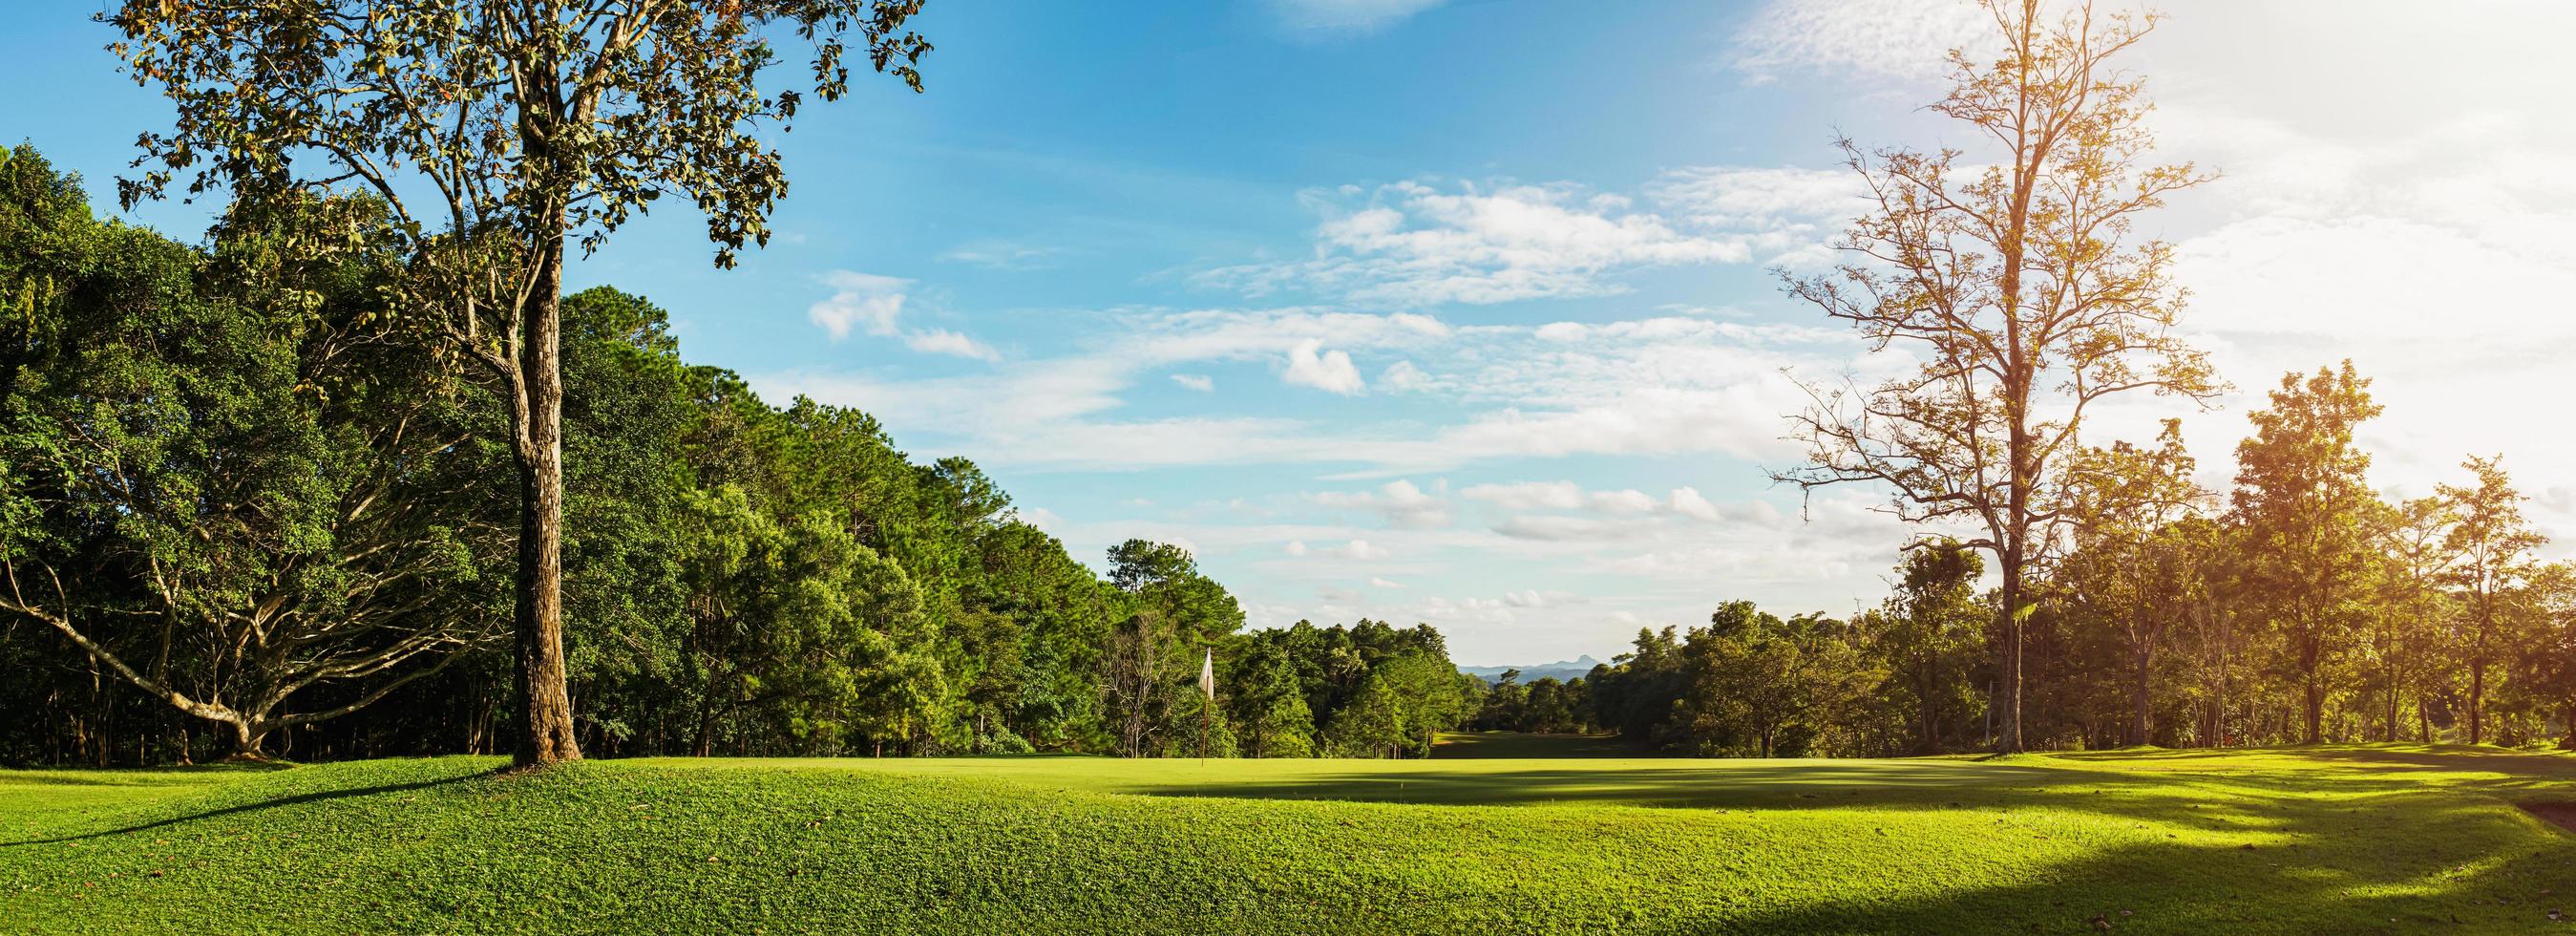 panorama landschap golf crouse met zonlicht foto